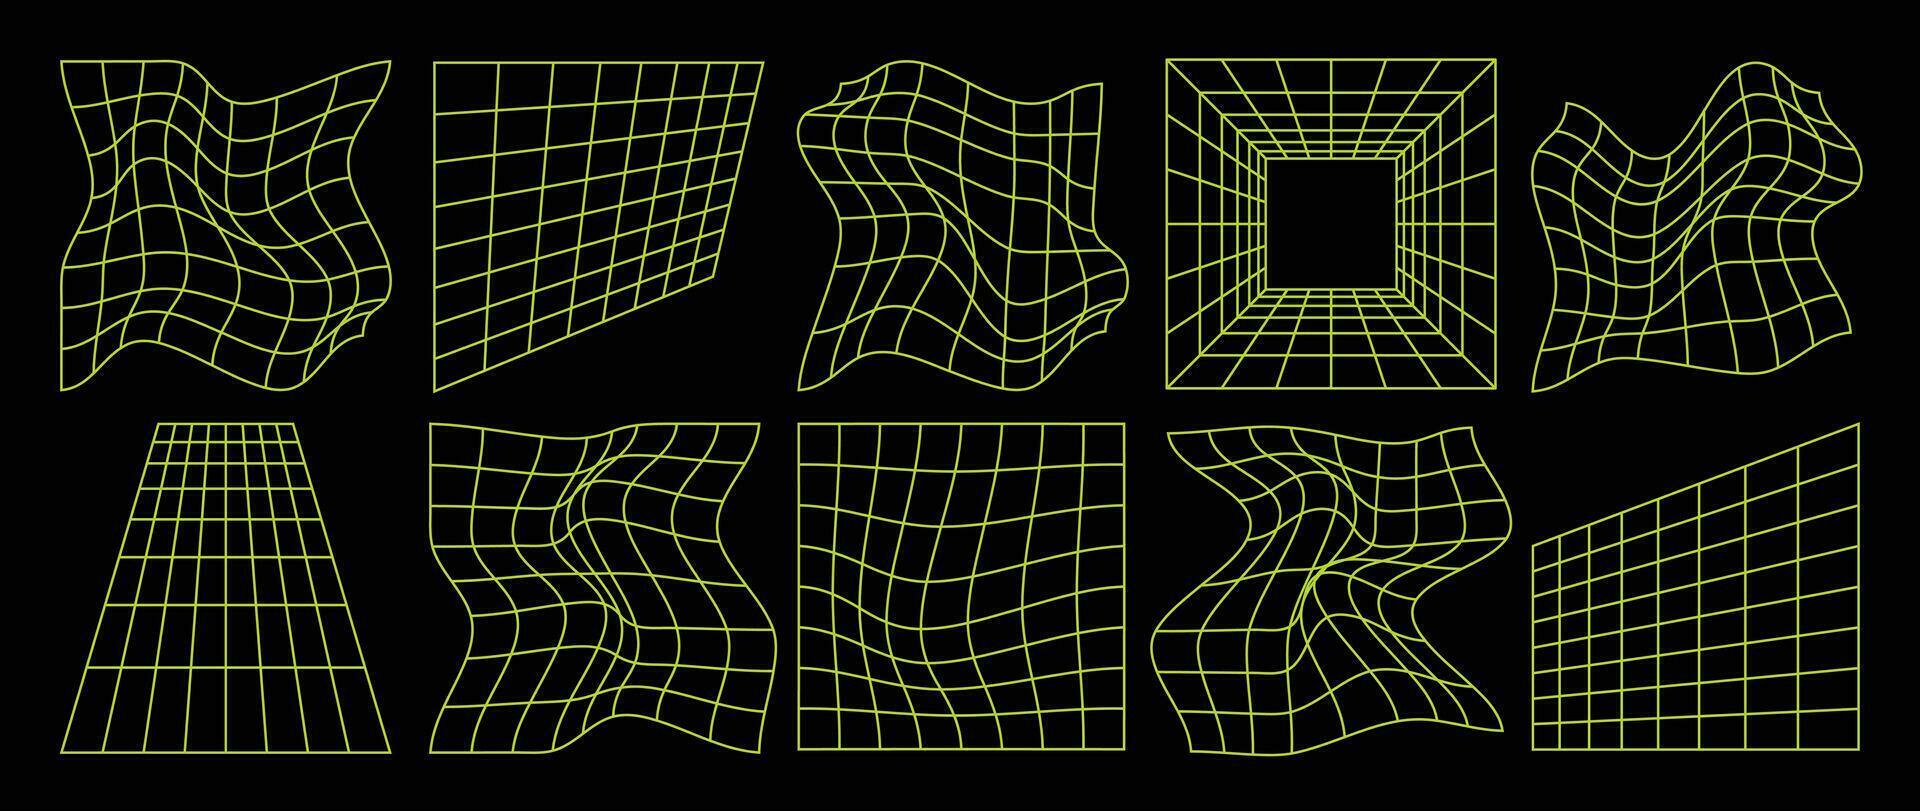 samling av trogen cyberpunk stil element. geometrisk trådmodell av fyrkant, förvrängning, rutnät med neon grön Färg. retro grafisk på svart bakgrund för dekoration, företag, omslag, affisch. vektor